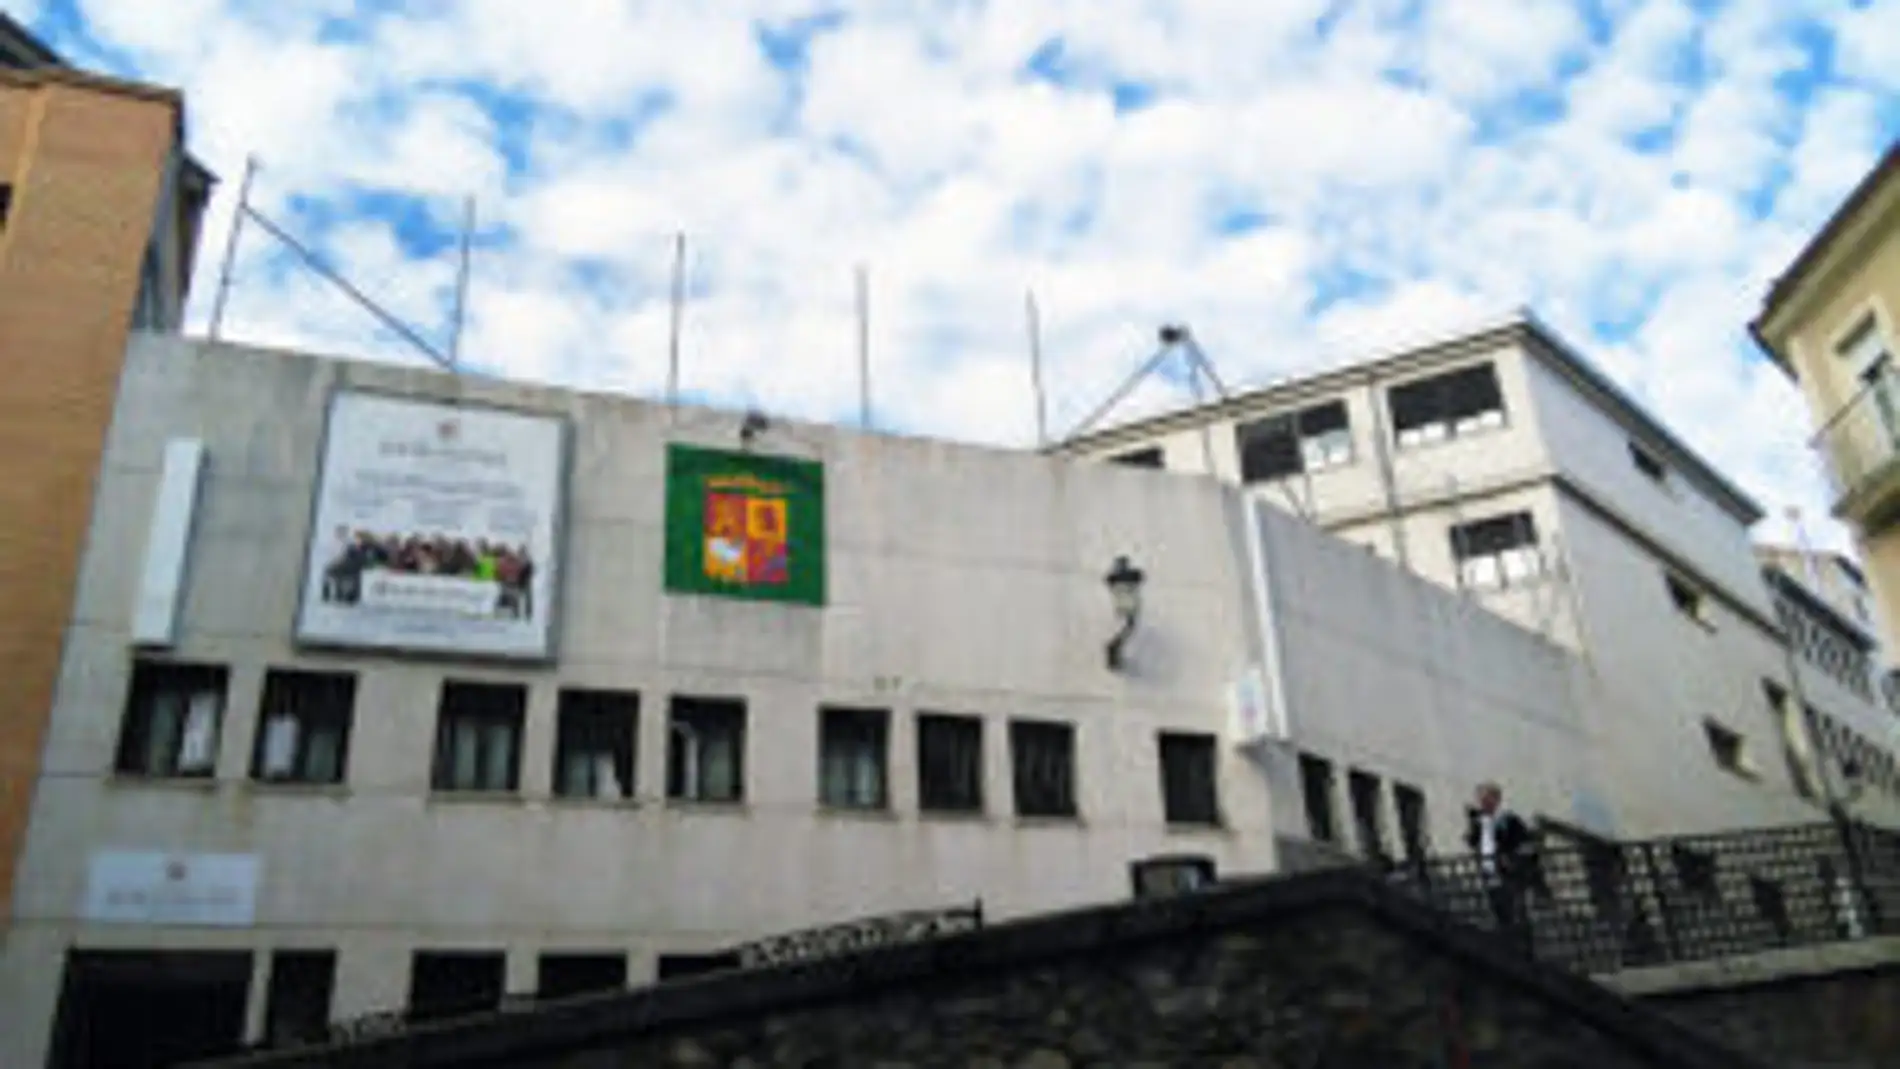 El ayuntamiento de Cáceres paraliza la cesión de suelo al colegio Paideuterion y otros centros concertados